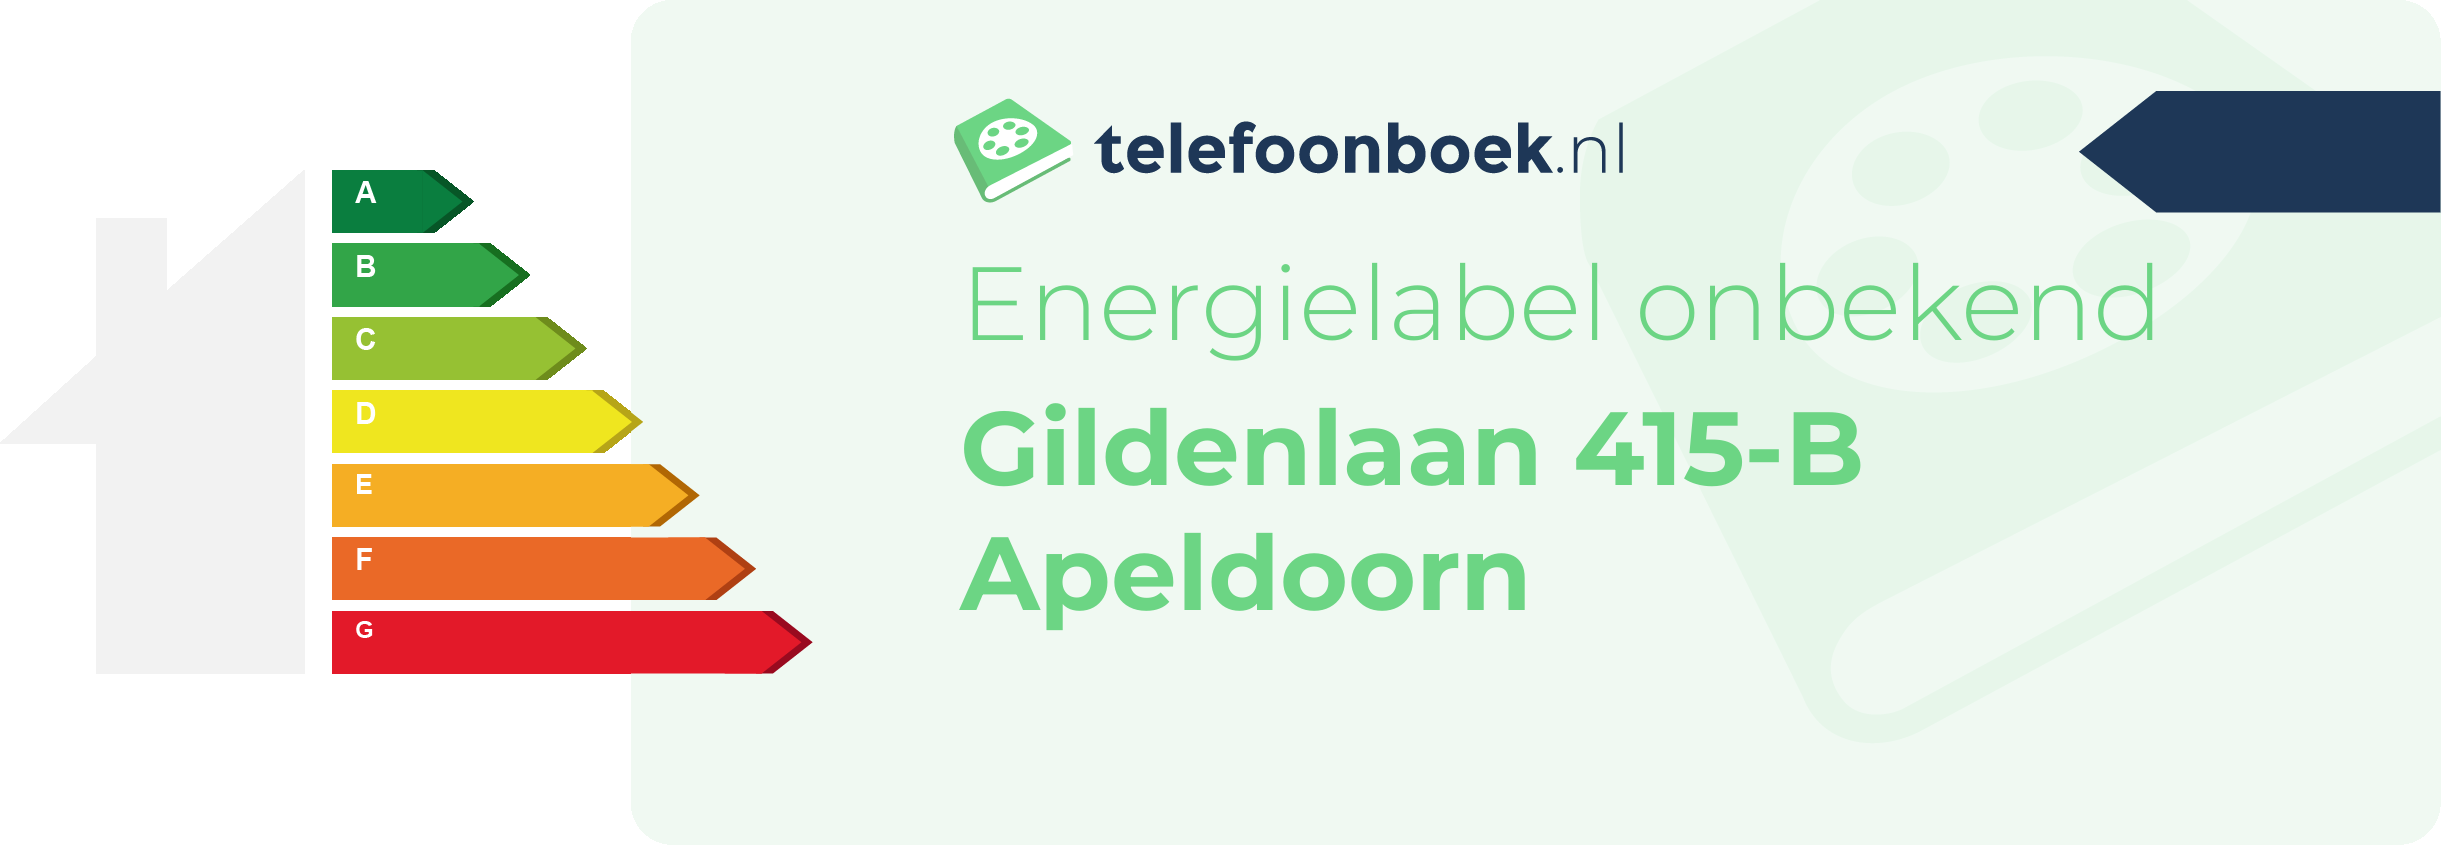 Energielabel Gildenlaan 415-B Apeldoorn